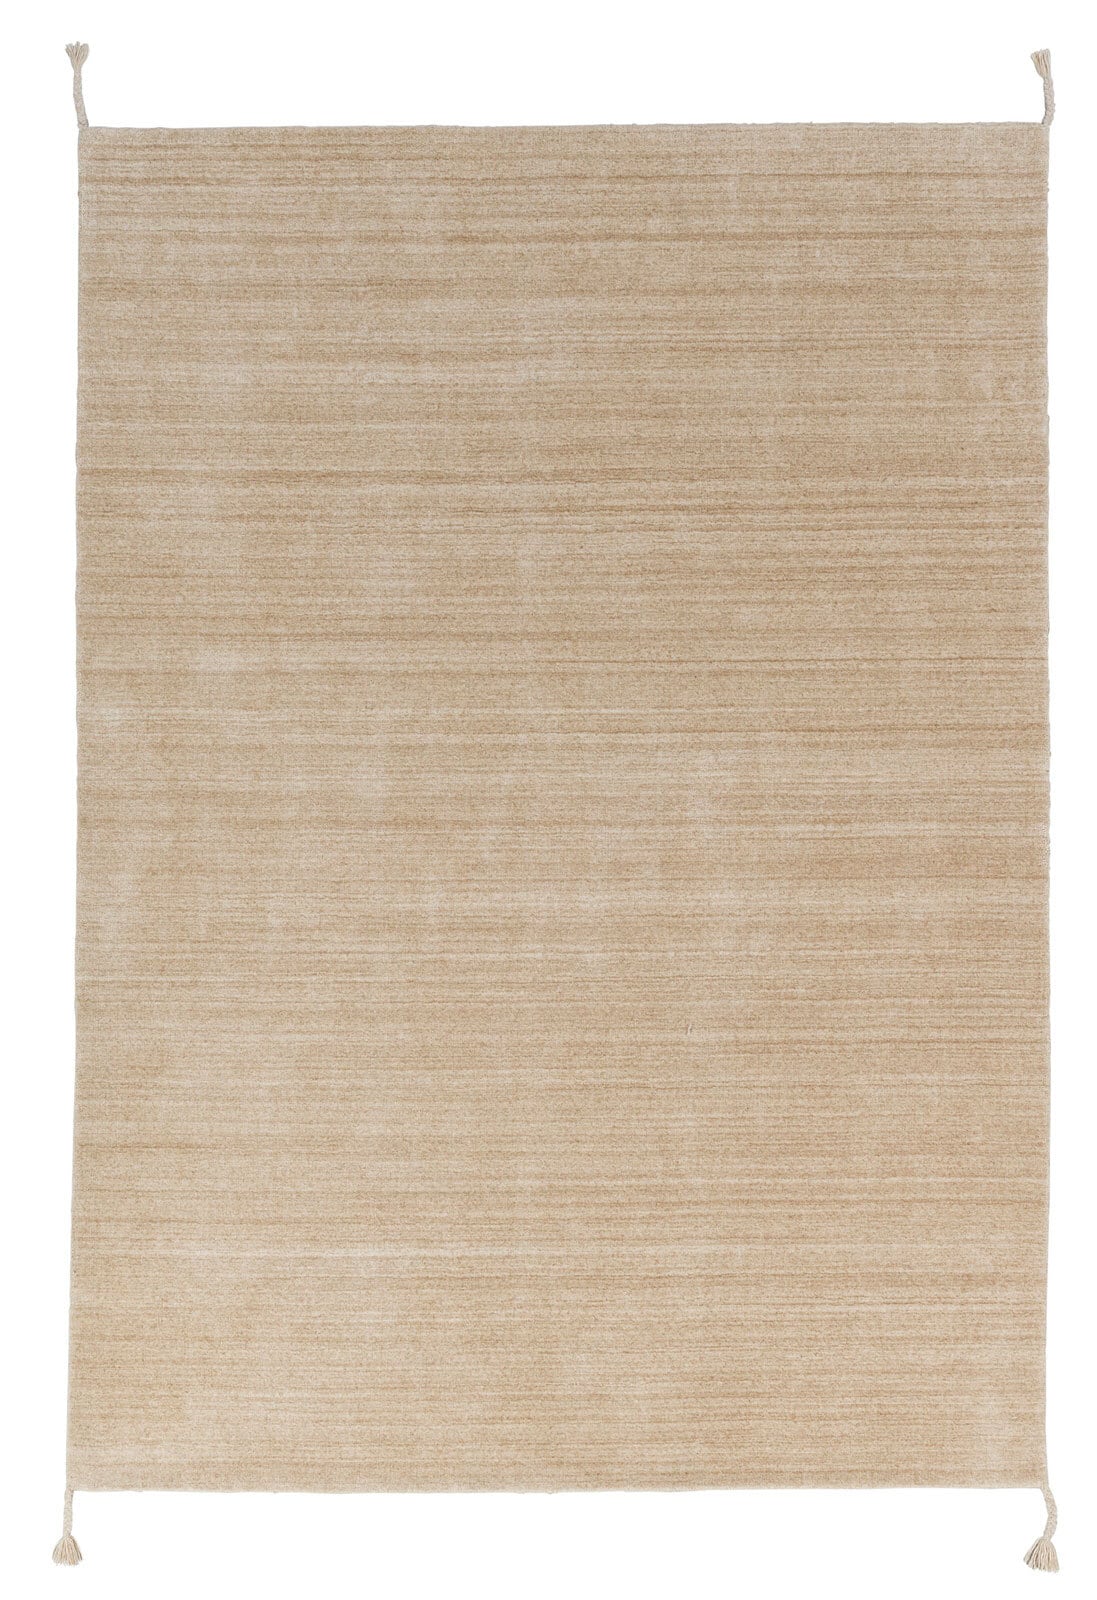 SCHÖNER WOHNEN-Kollektion Webteppich ALURA 170 x 240 cm beige